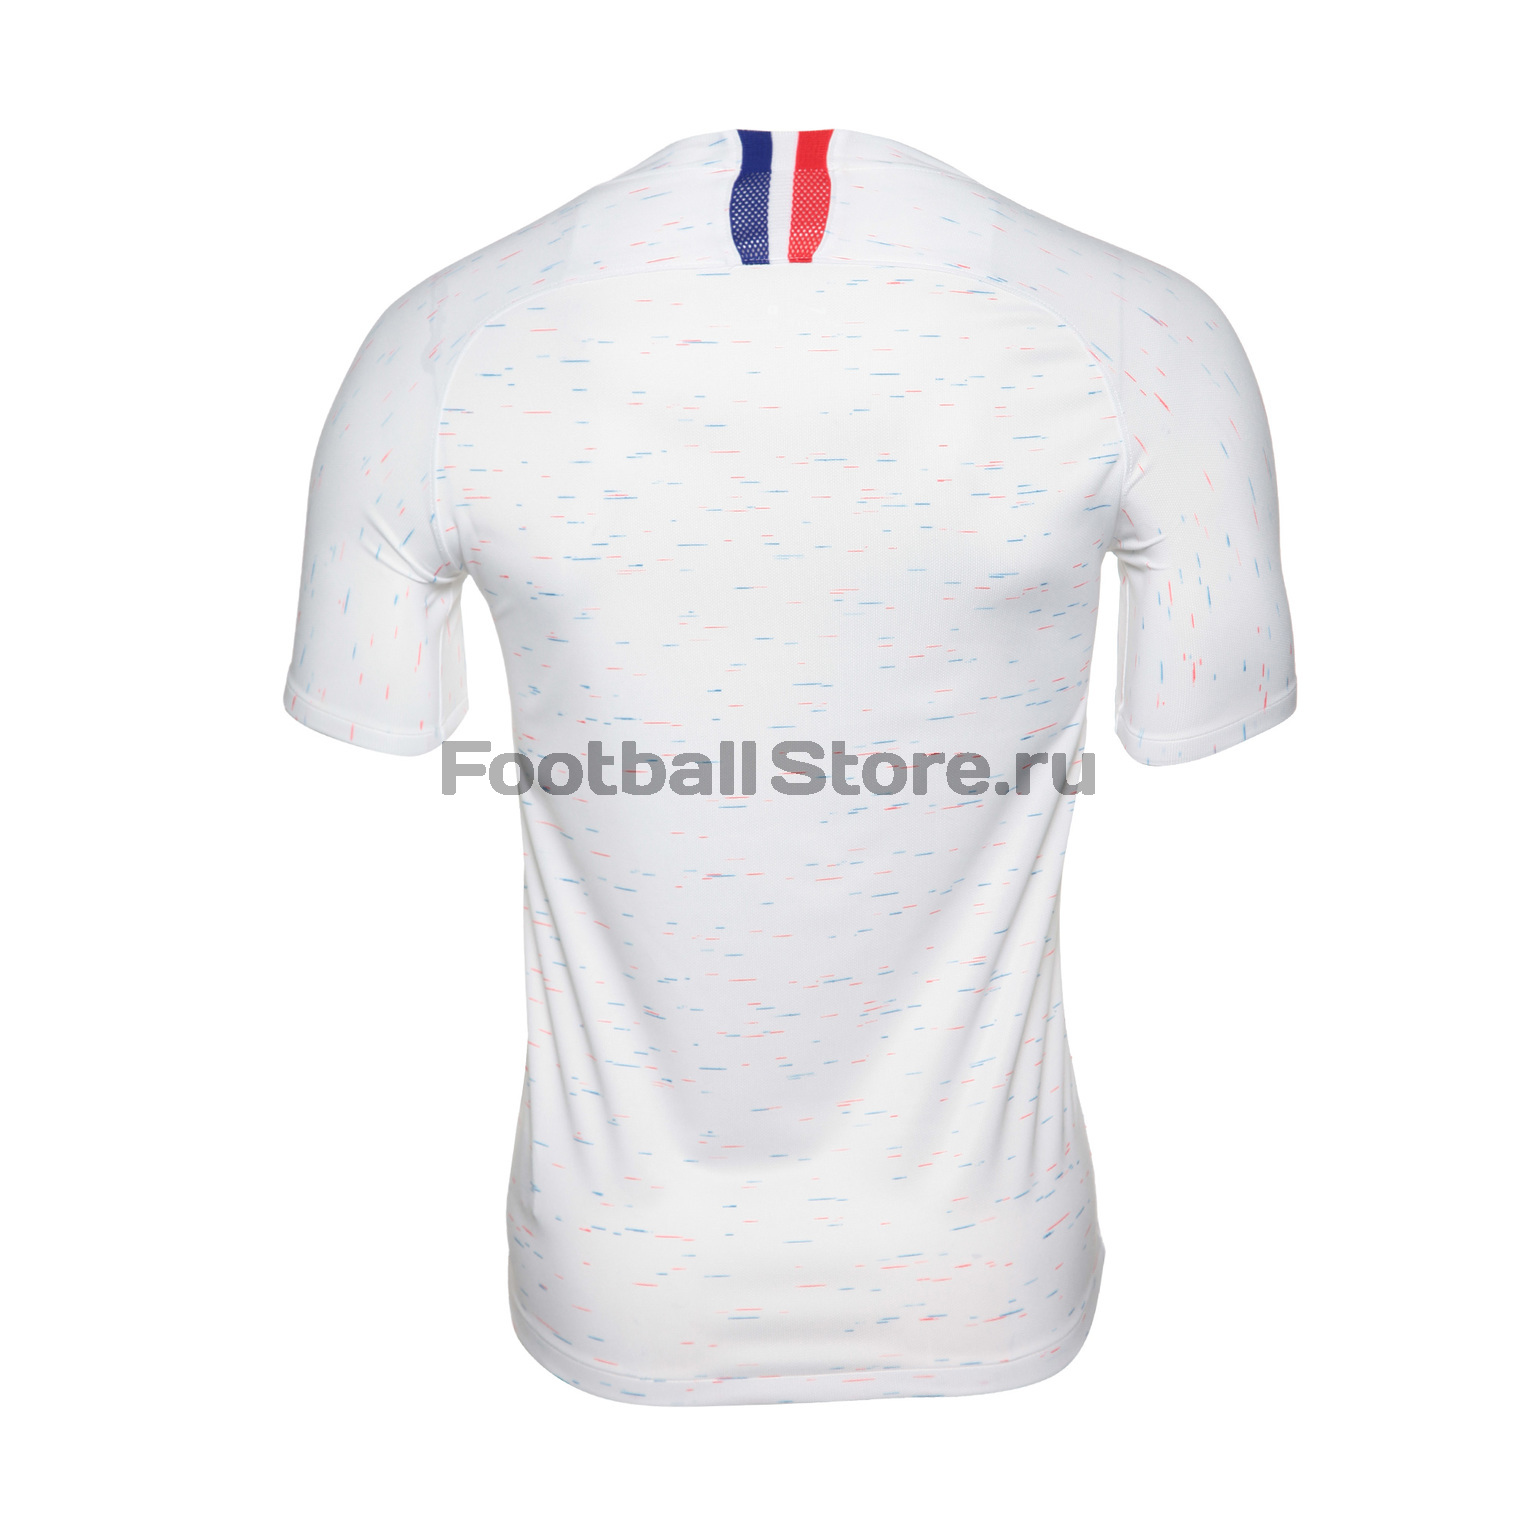 Футболка игровая Nike сборной Франции гостевая 893871-100